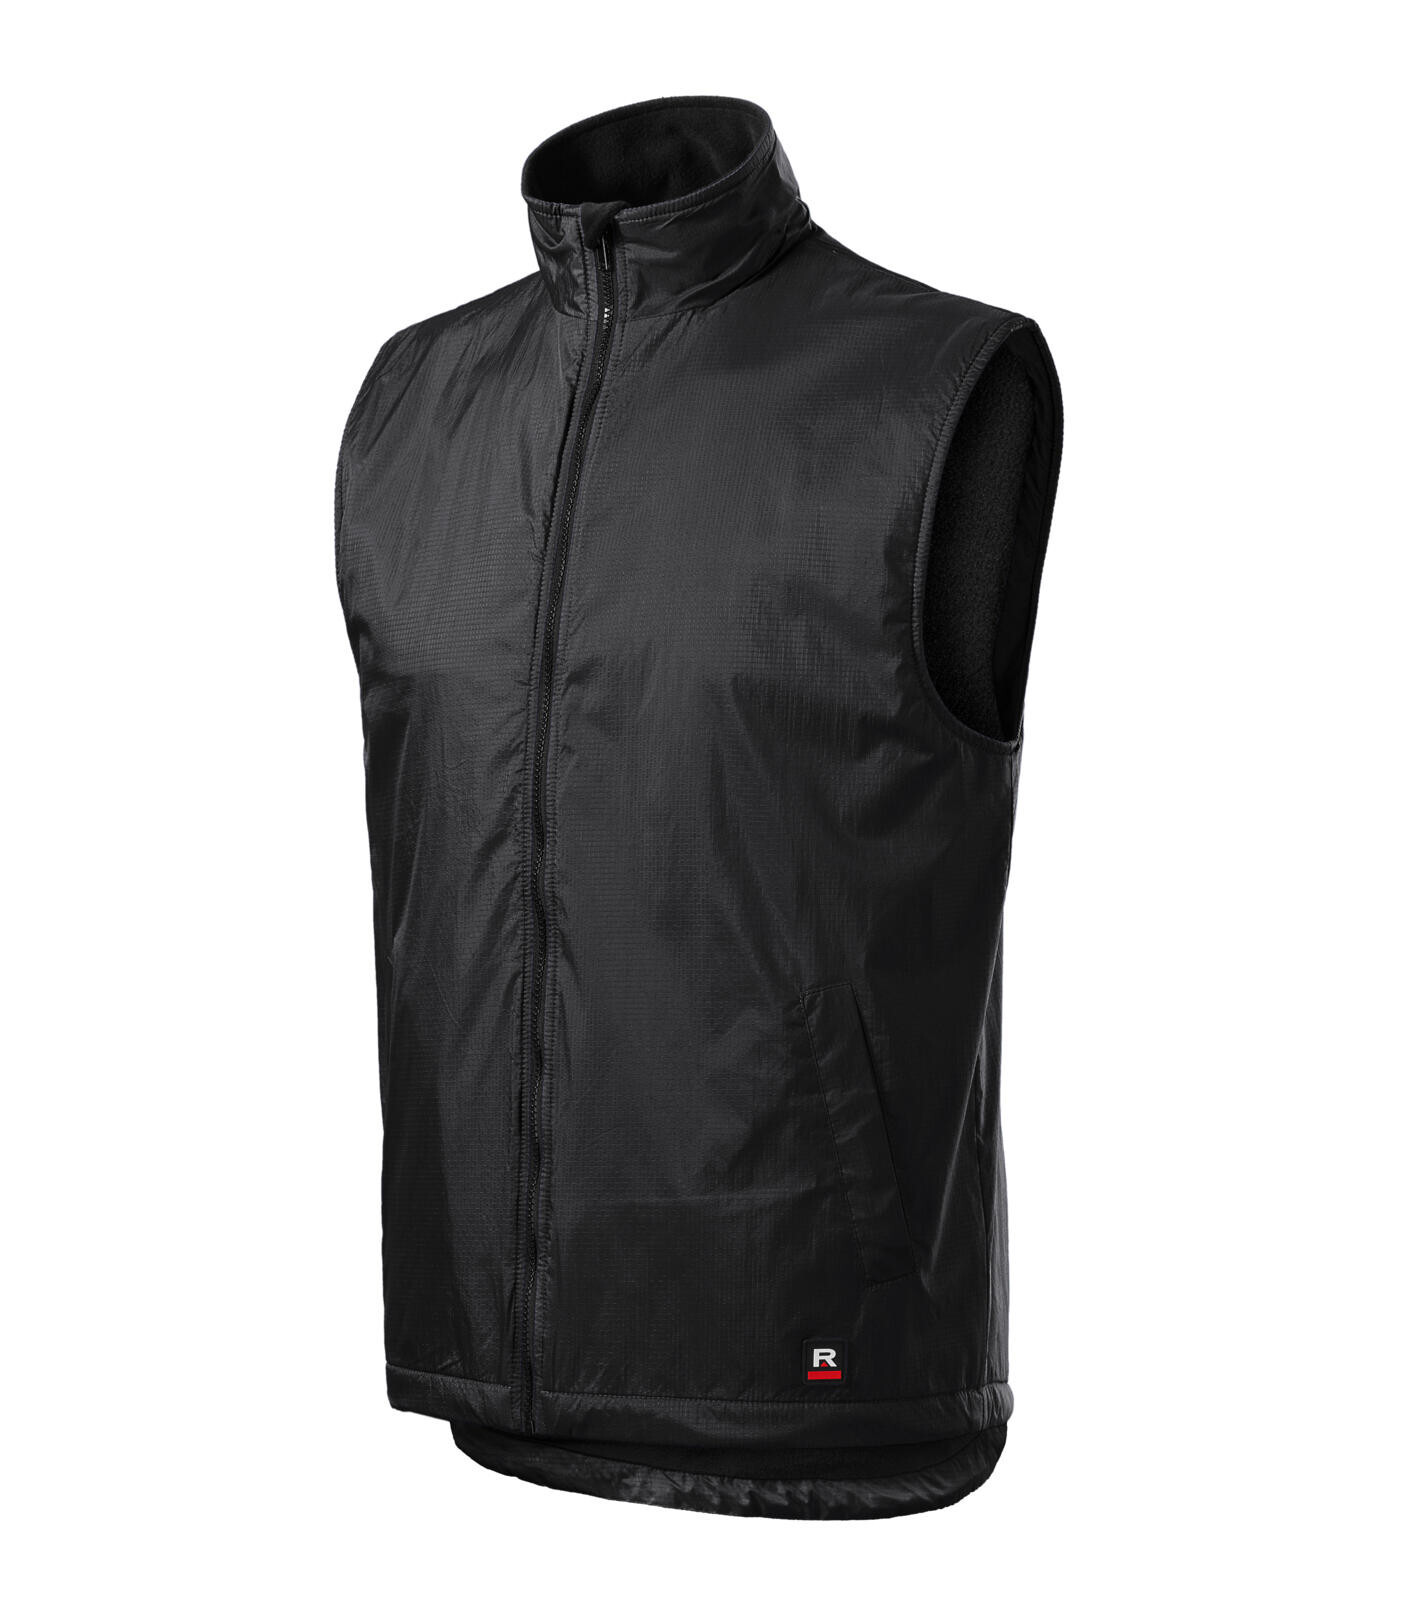 Unisex zateplená vesta Rimeck Body Warmer 509 - veľkosť: 3XL, farba: ebony grey